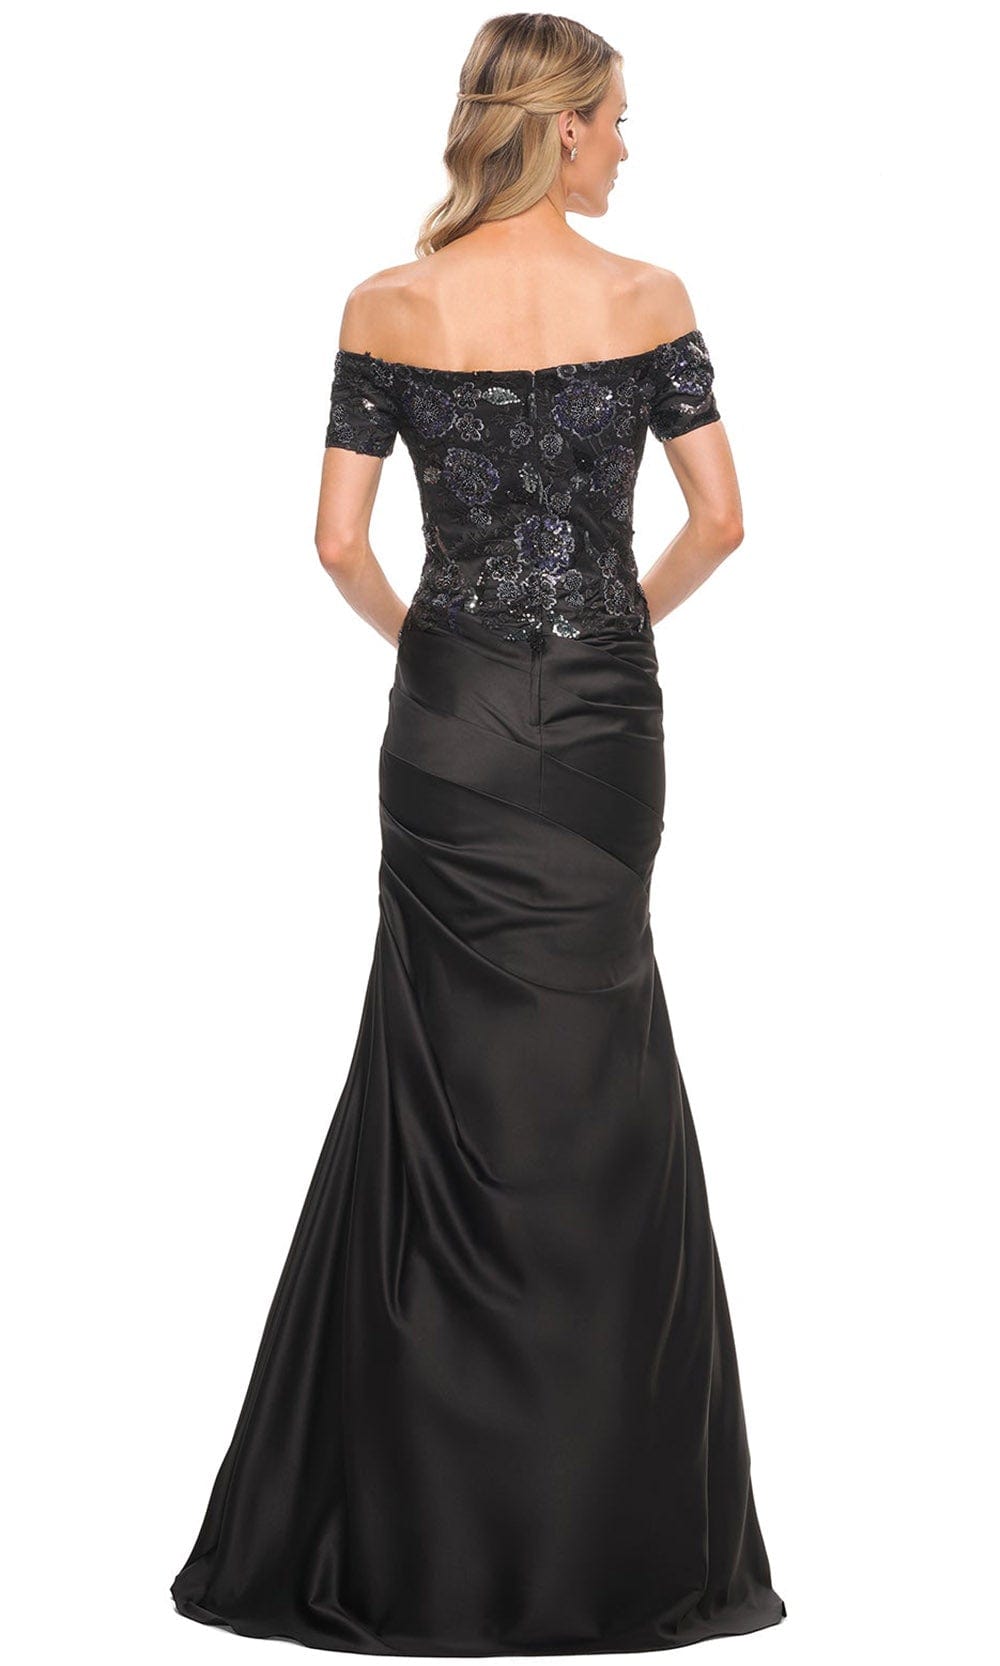 La Femme 30404 - Embellished Long Trumpet Dress Special Occasion Dress